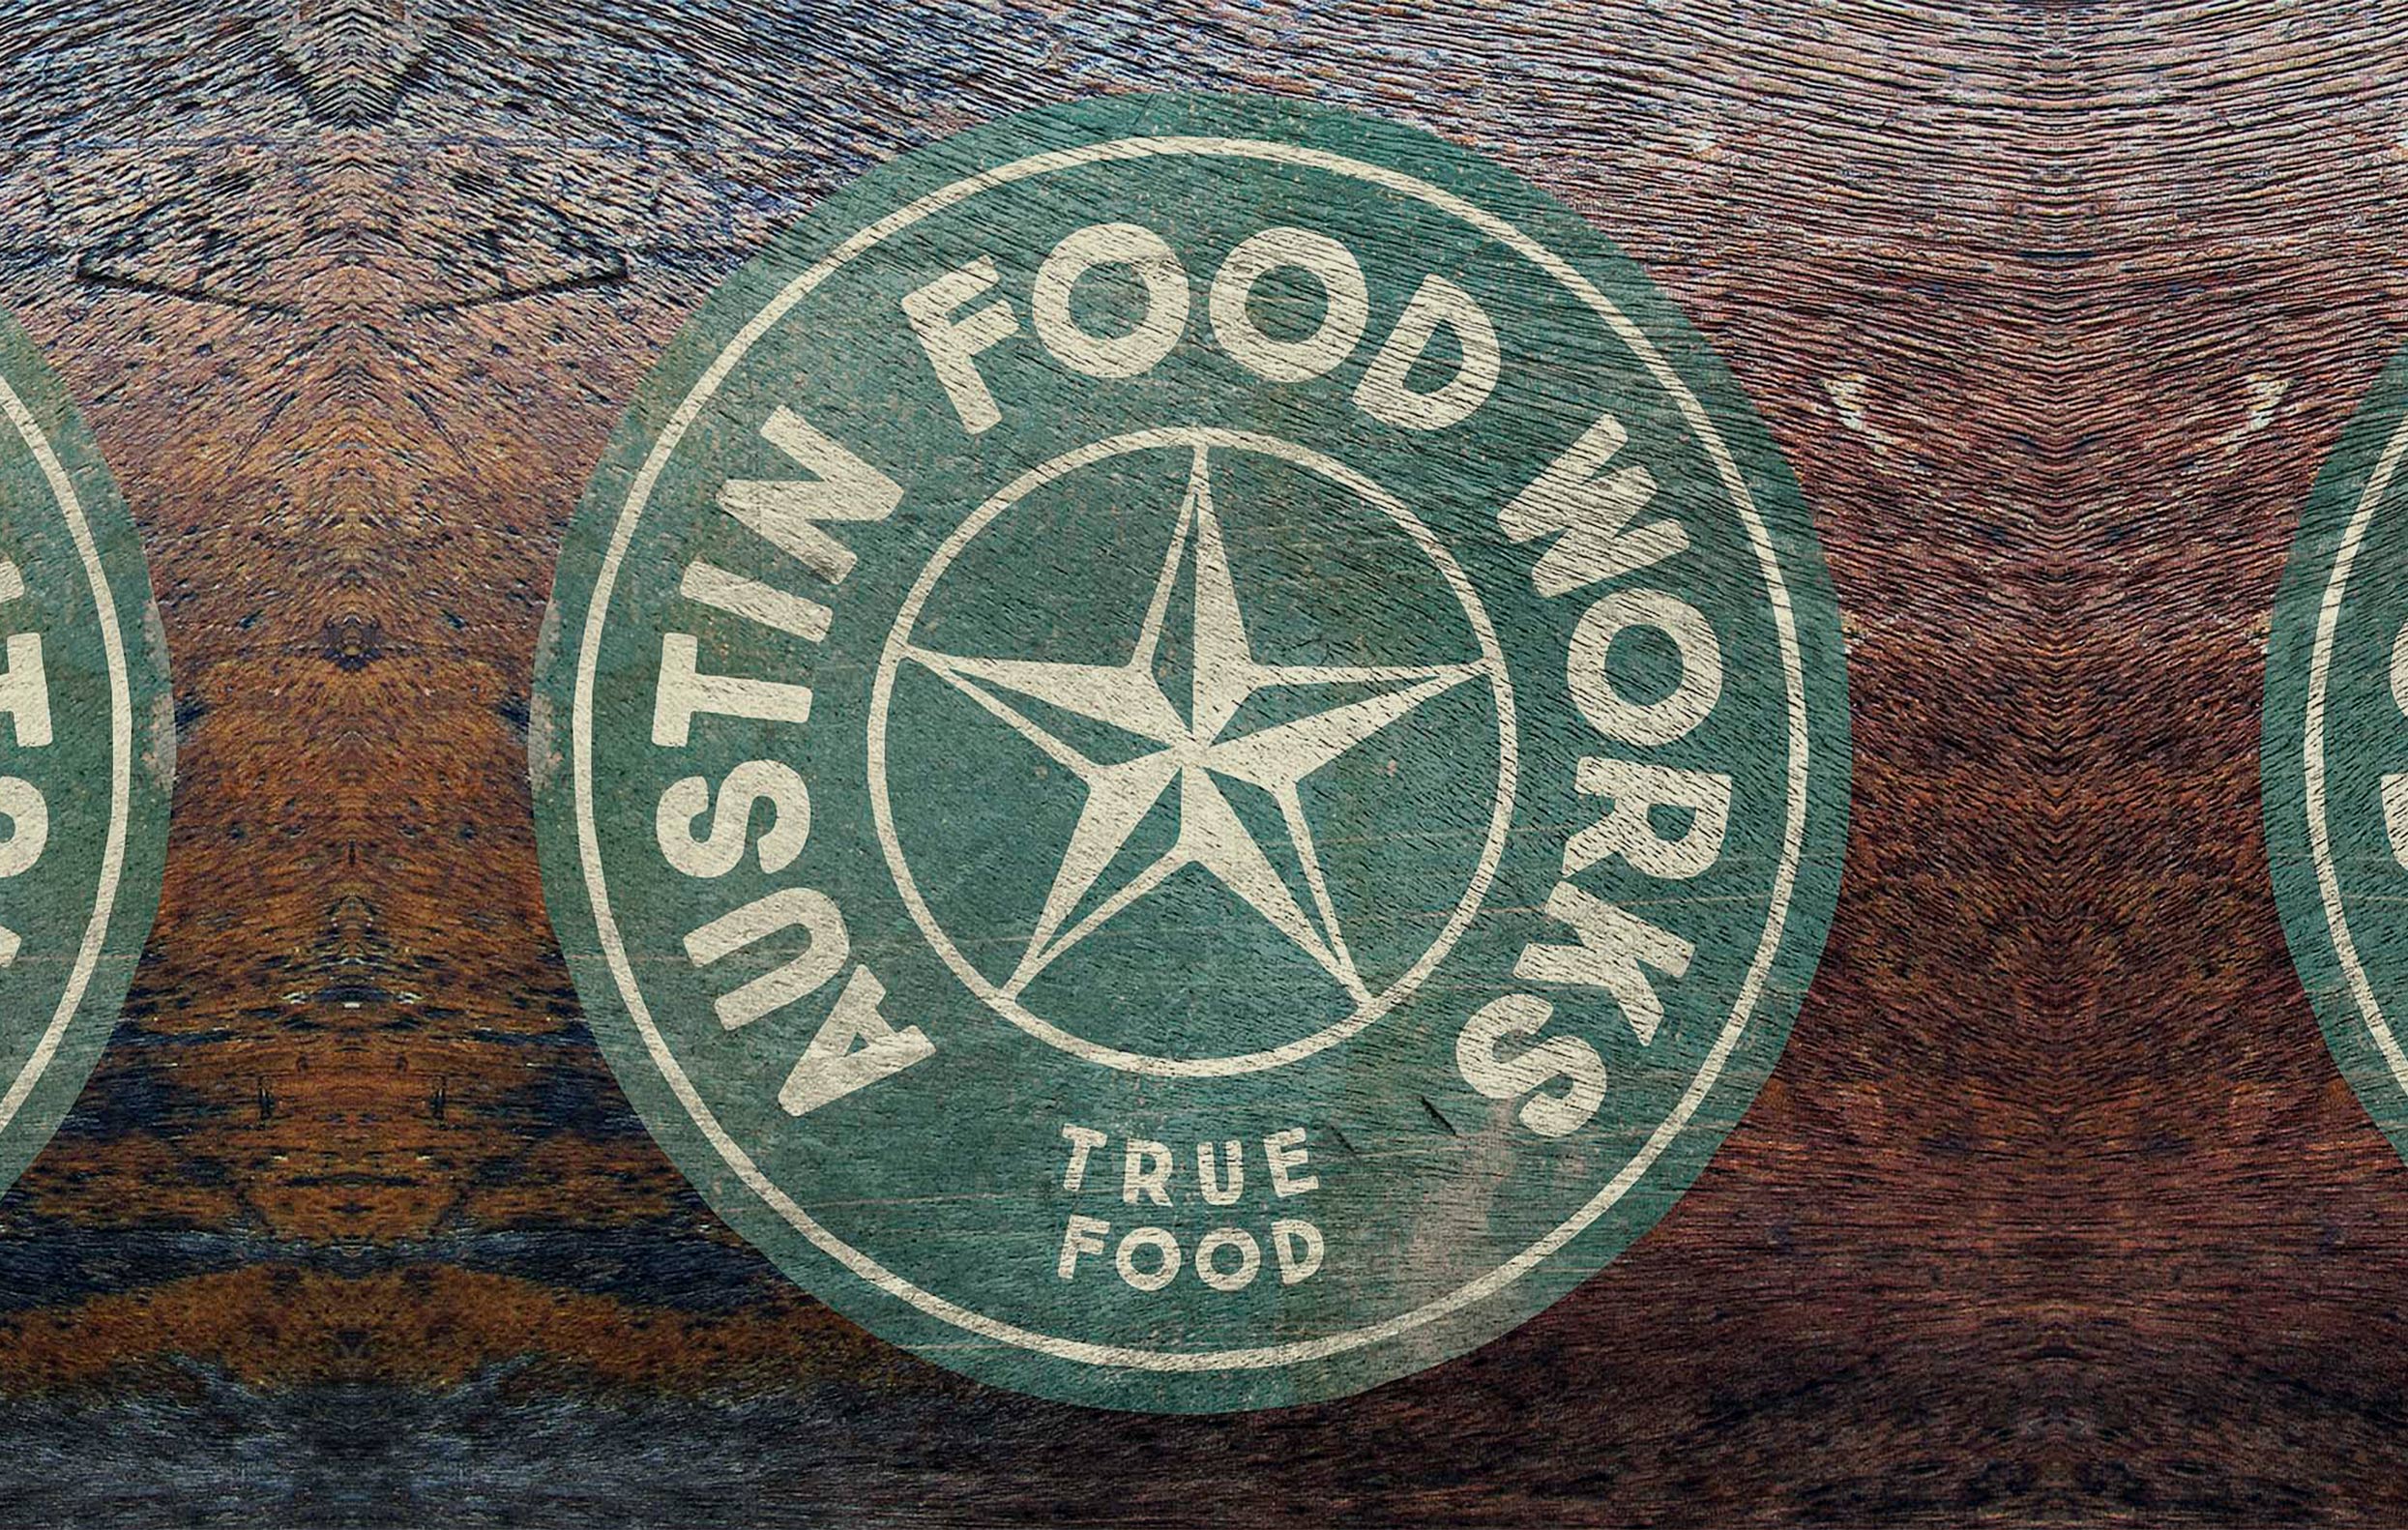 Austin food works / Visuell Identitet